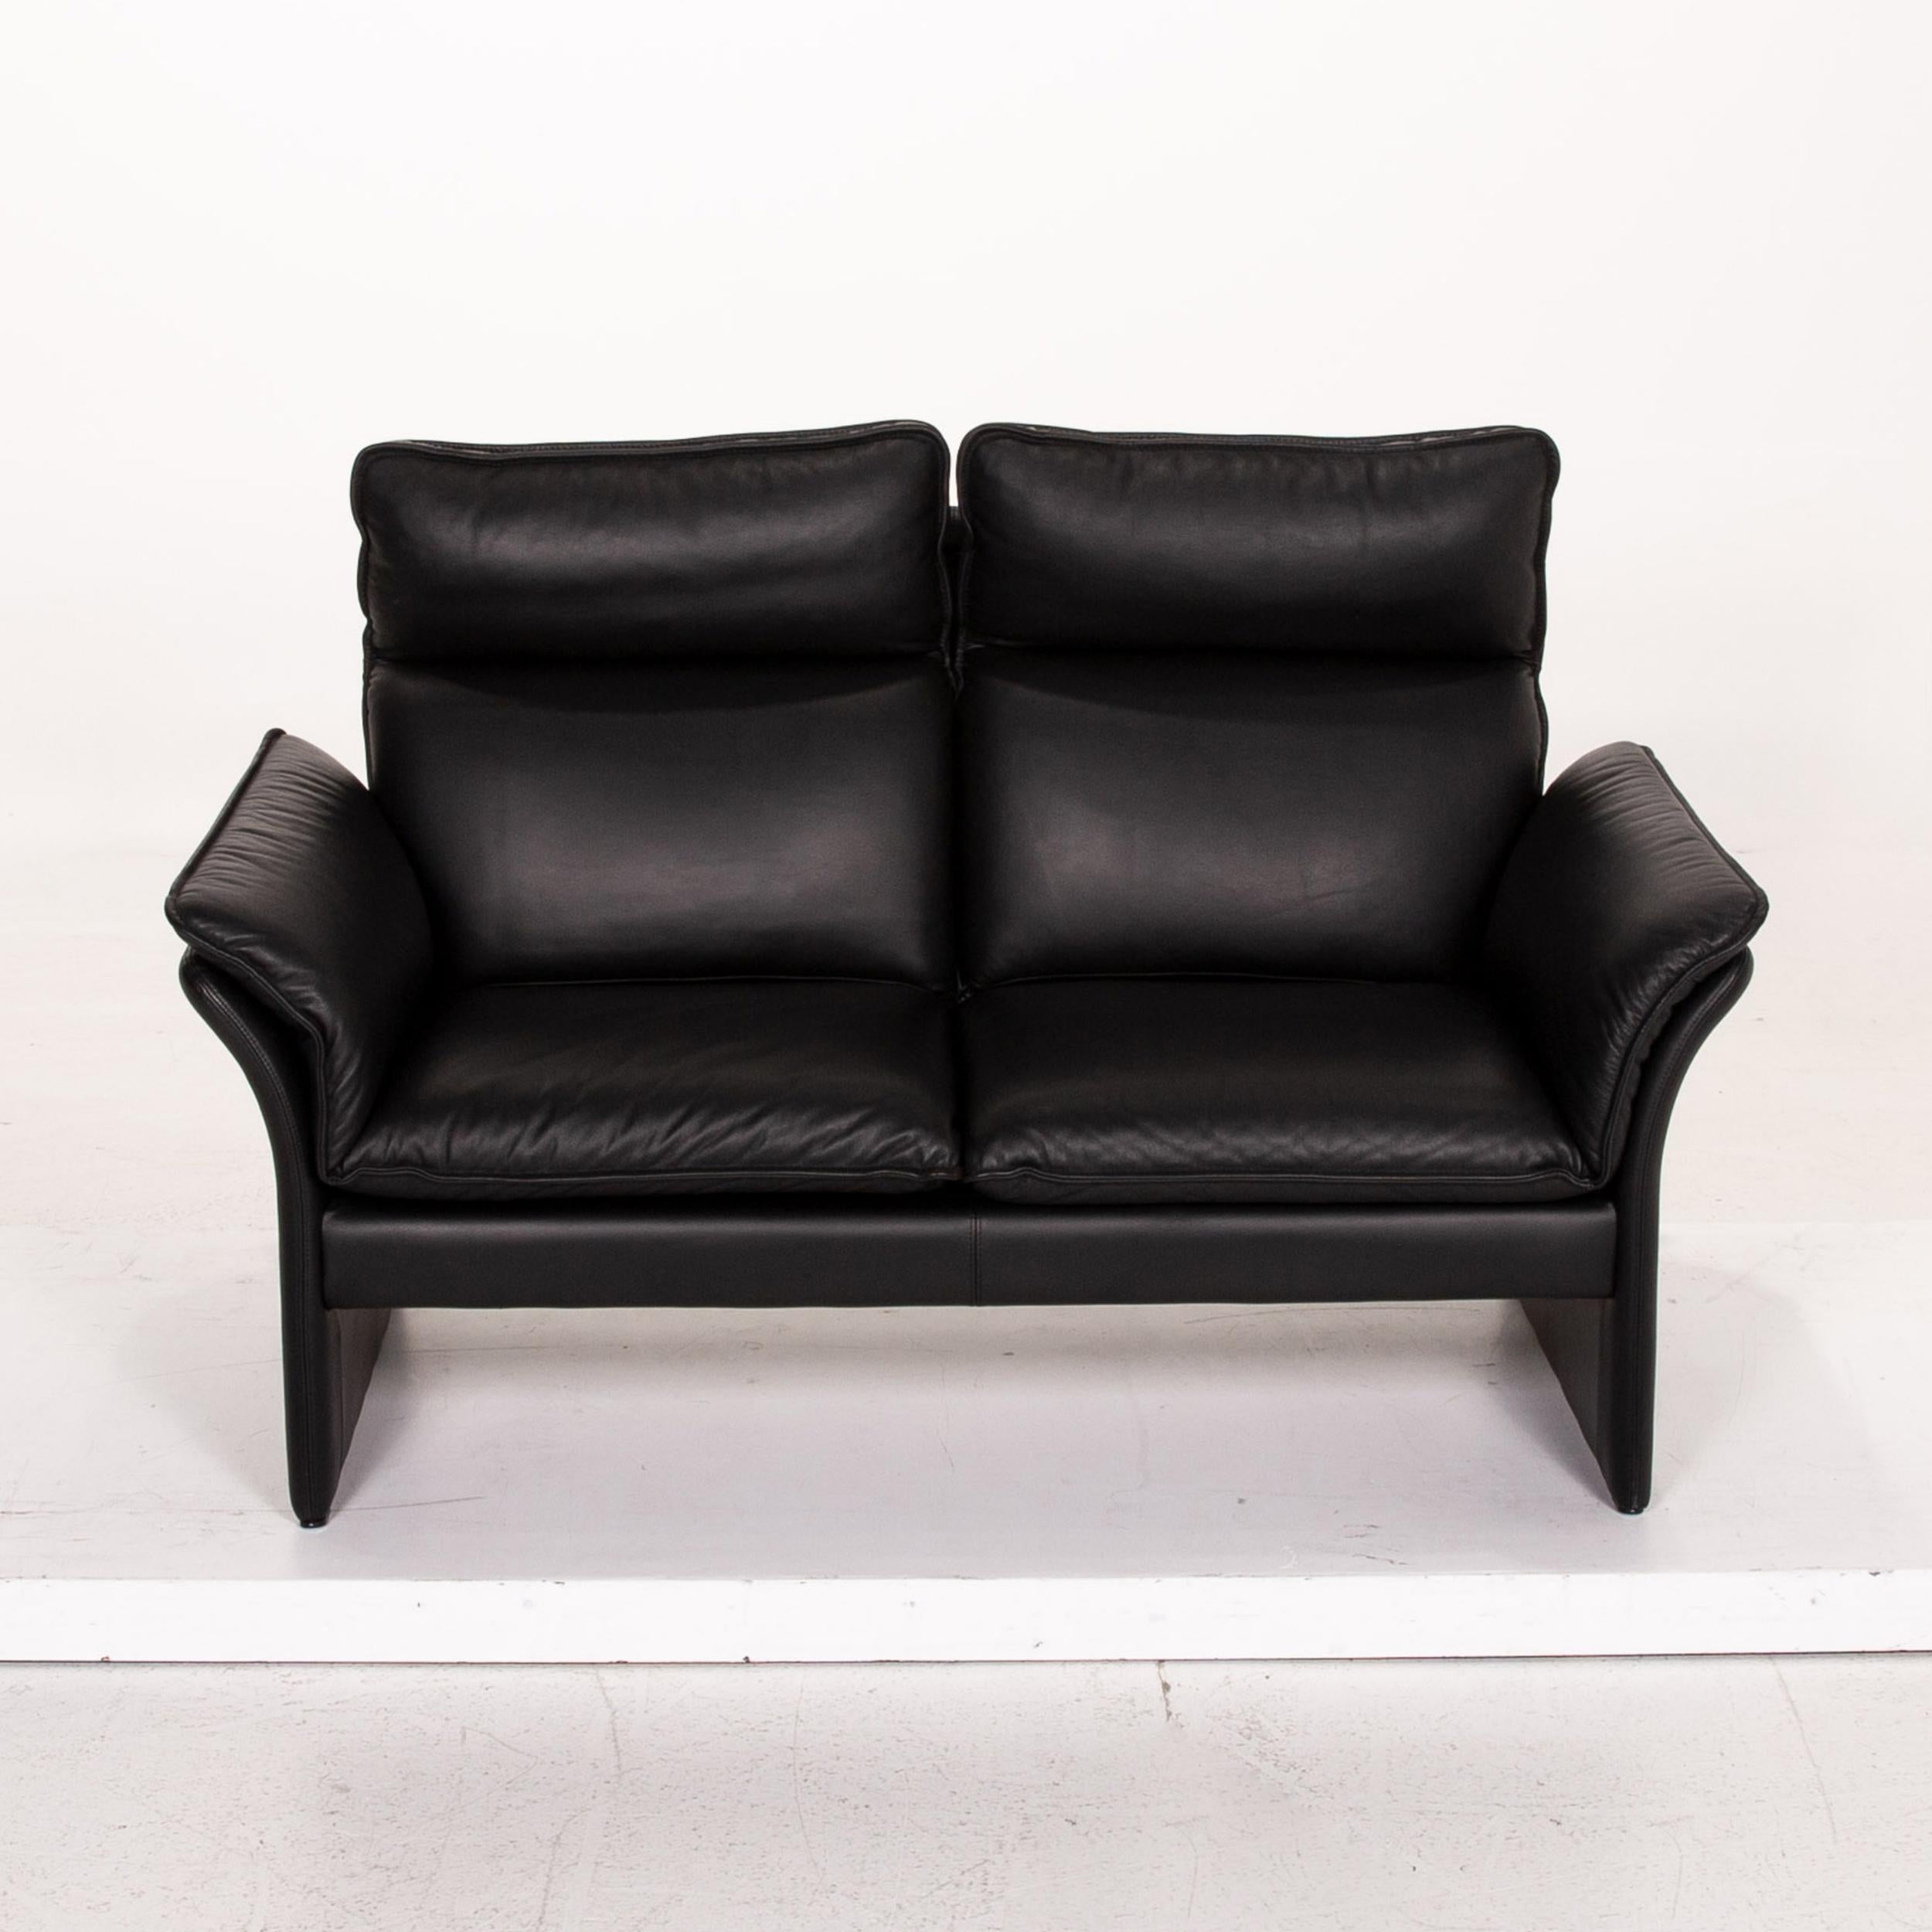 Three-Point Scala Leather Sofa Set Black 1 Three-Seat 1 Two-Seat 7